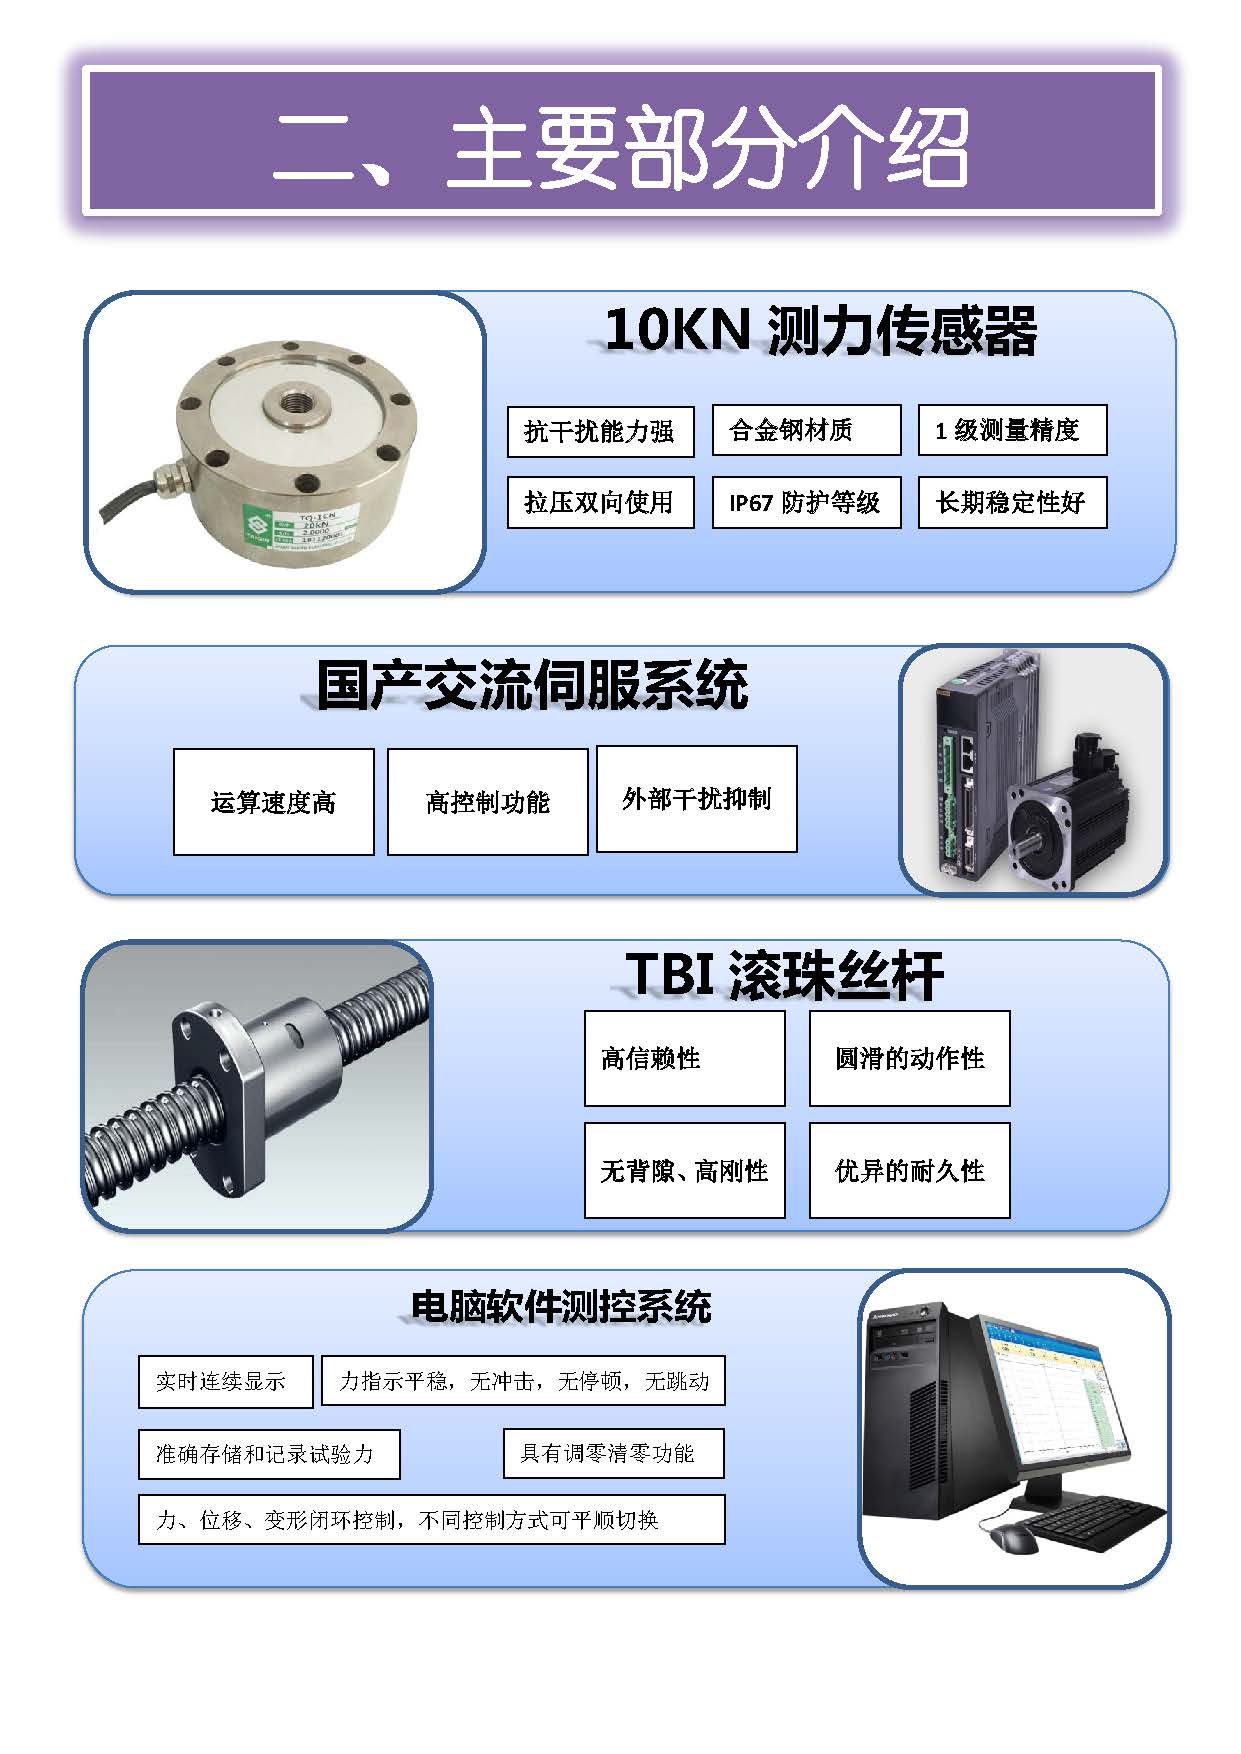 微机门式-国产配置 中文 所有型号_页面_02.jpg